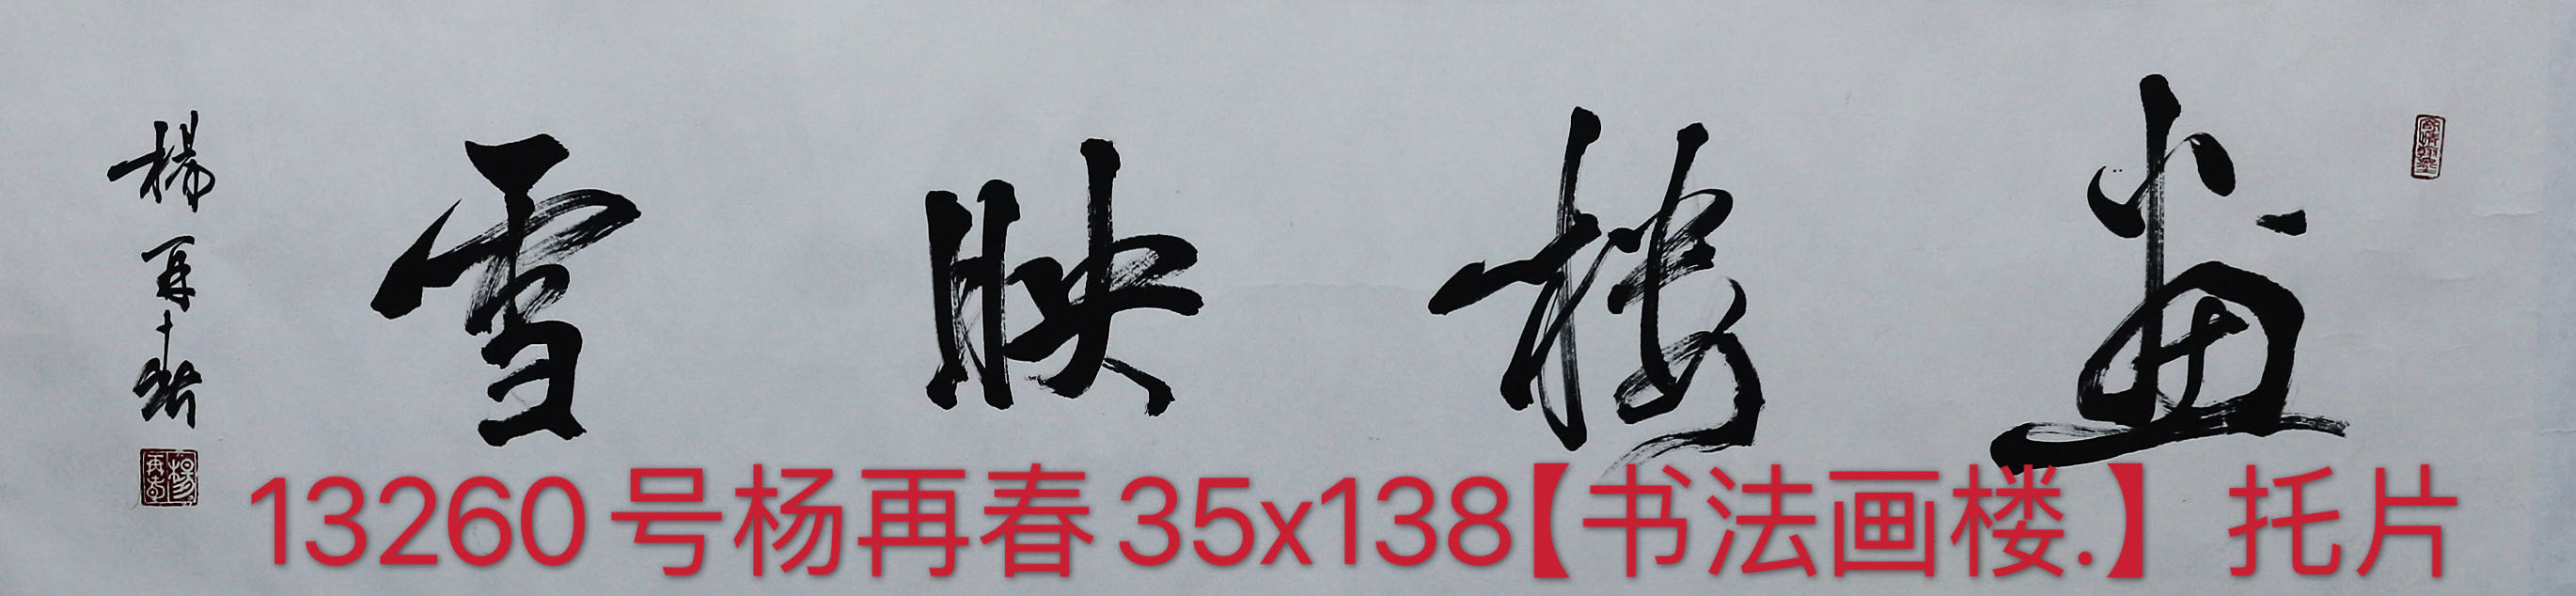 13260号杨再春35x138【书法画楼.】托片.jpg